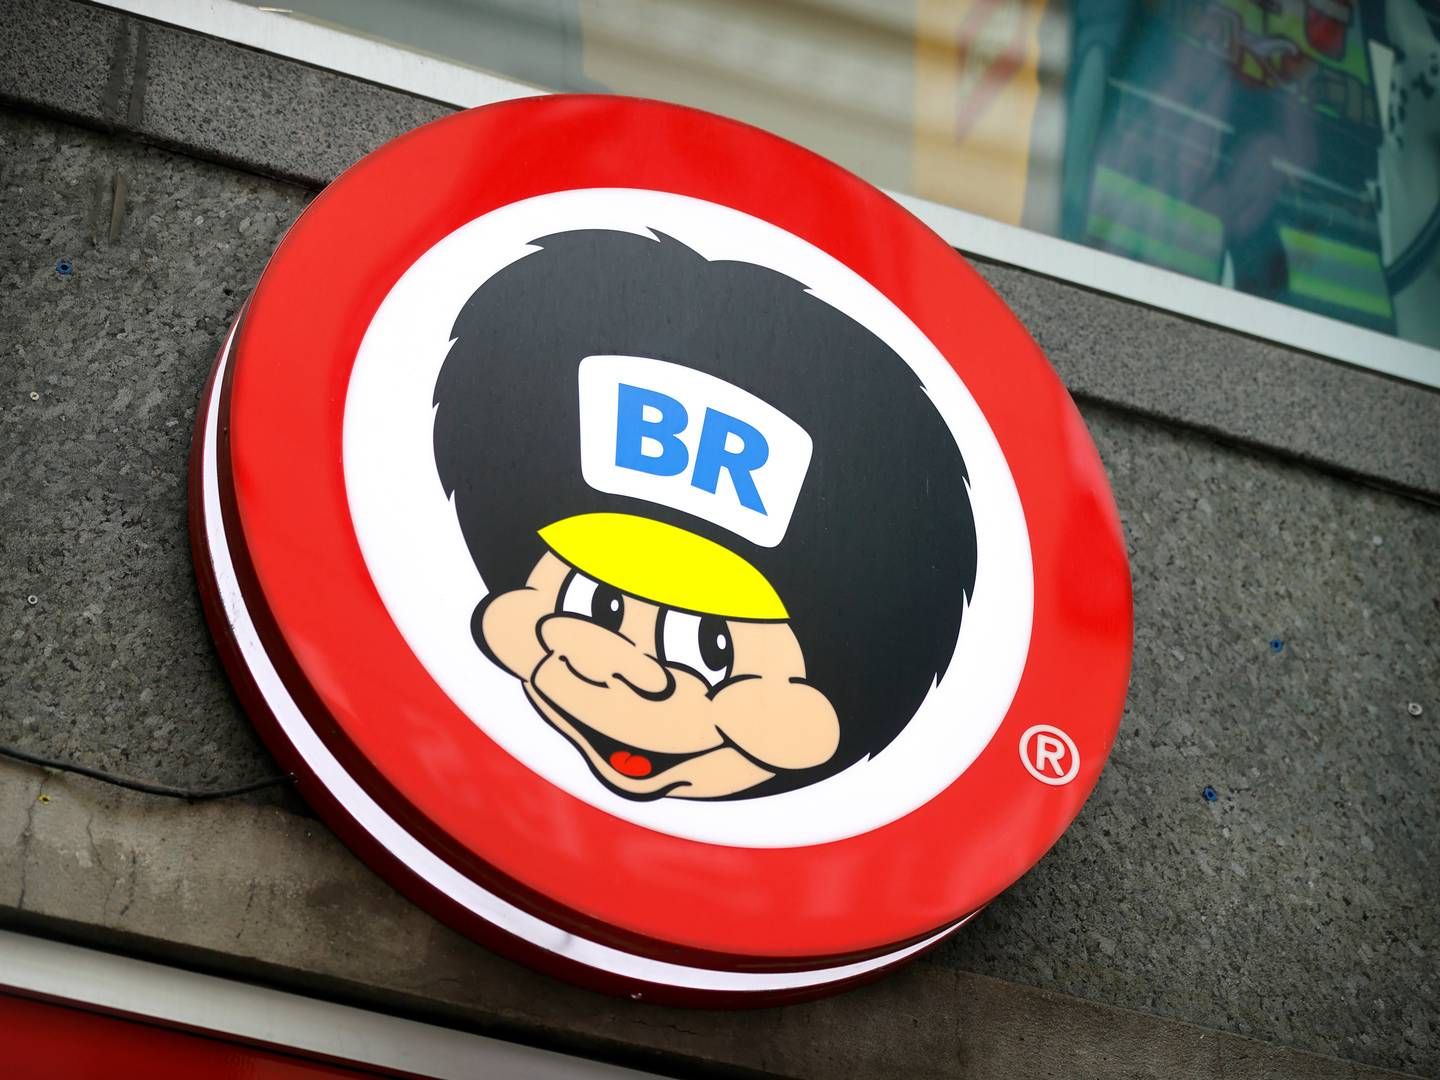 Salling Group købte i 2019 BR-brandet, efter Top-Toy, der tidligere havde drevet BR og Toys R Us i Norden, gik konkurs. | Foto: Jens Dresling